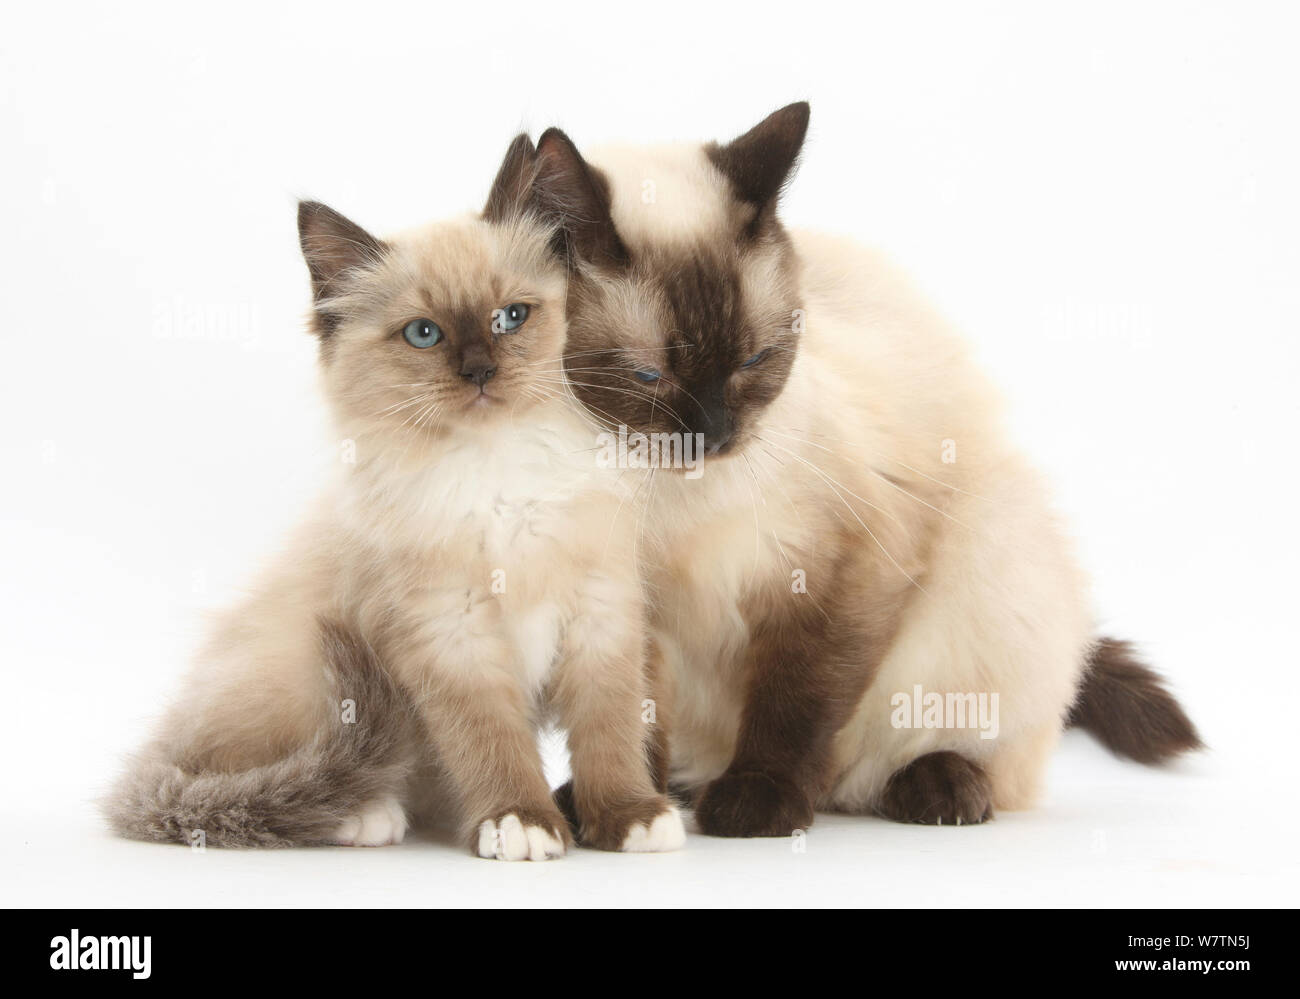 La mère de la croix-birman cat se blottissant jusqu'à son chaton, against white background Banque D'Images